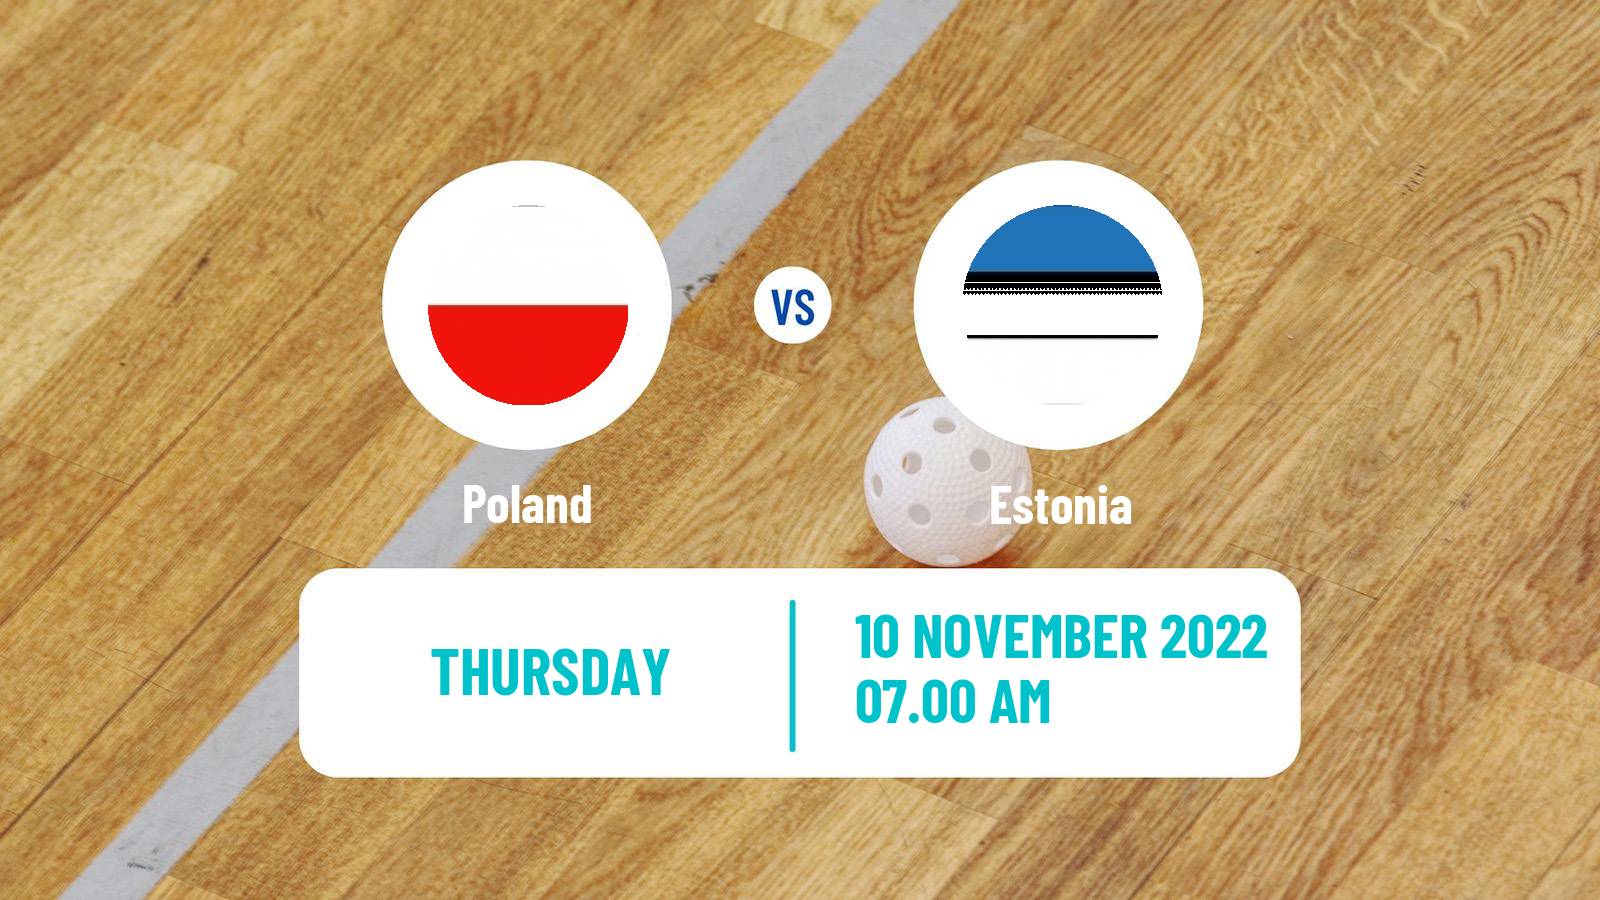 Floorball World Championship Floorball Poland - Estonia